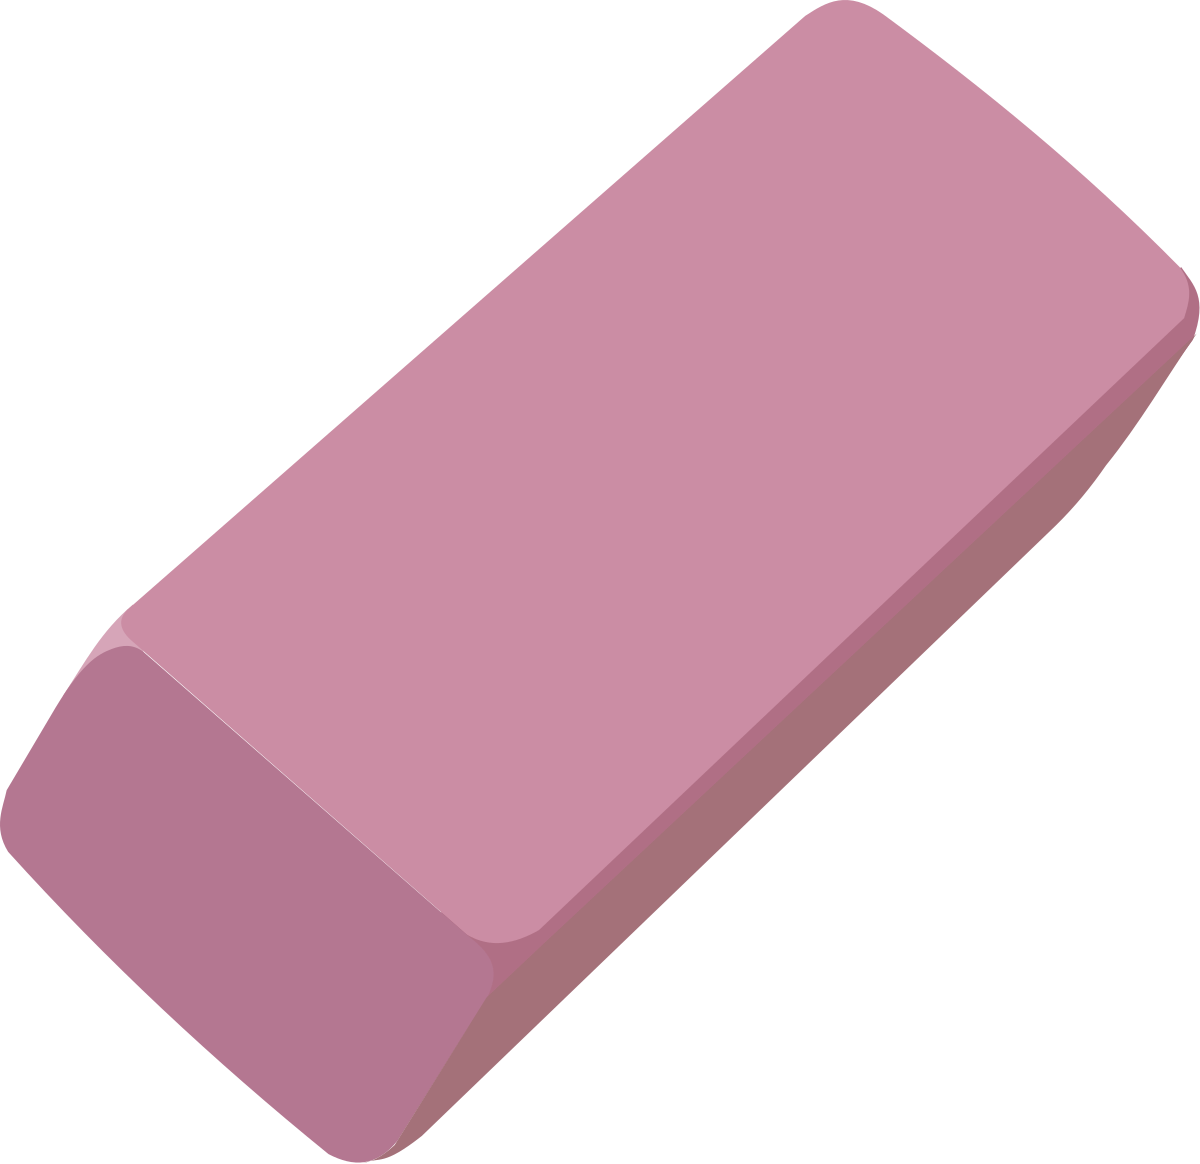 Các chai mực màu hồng đáng yêu cùng hình dạng và kiểu dáng xinh xắn đã thu hút bạn chưa? Mỗi hình ảnh tẩy chì hồng SVG đều được chăm chút đến từng chi tiết nhỏ nhất để giúp cải thiện sự sáng tạo của bạn.